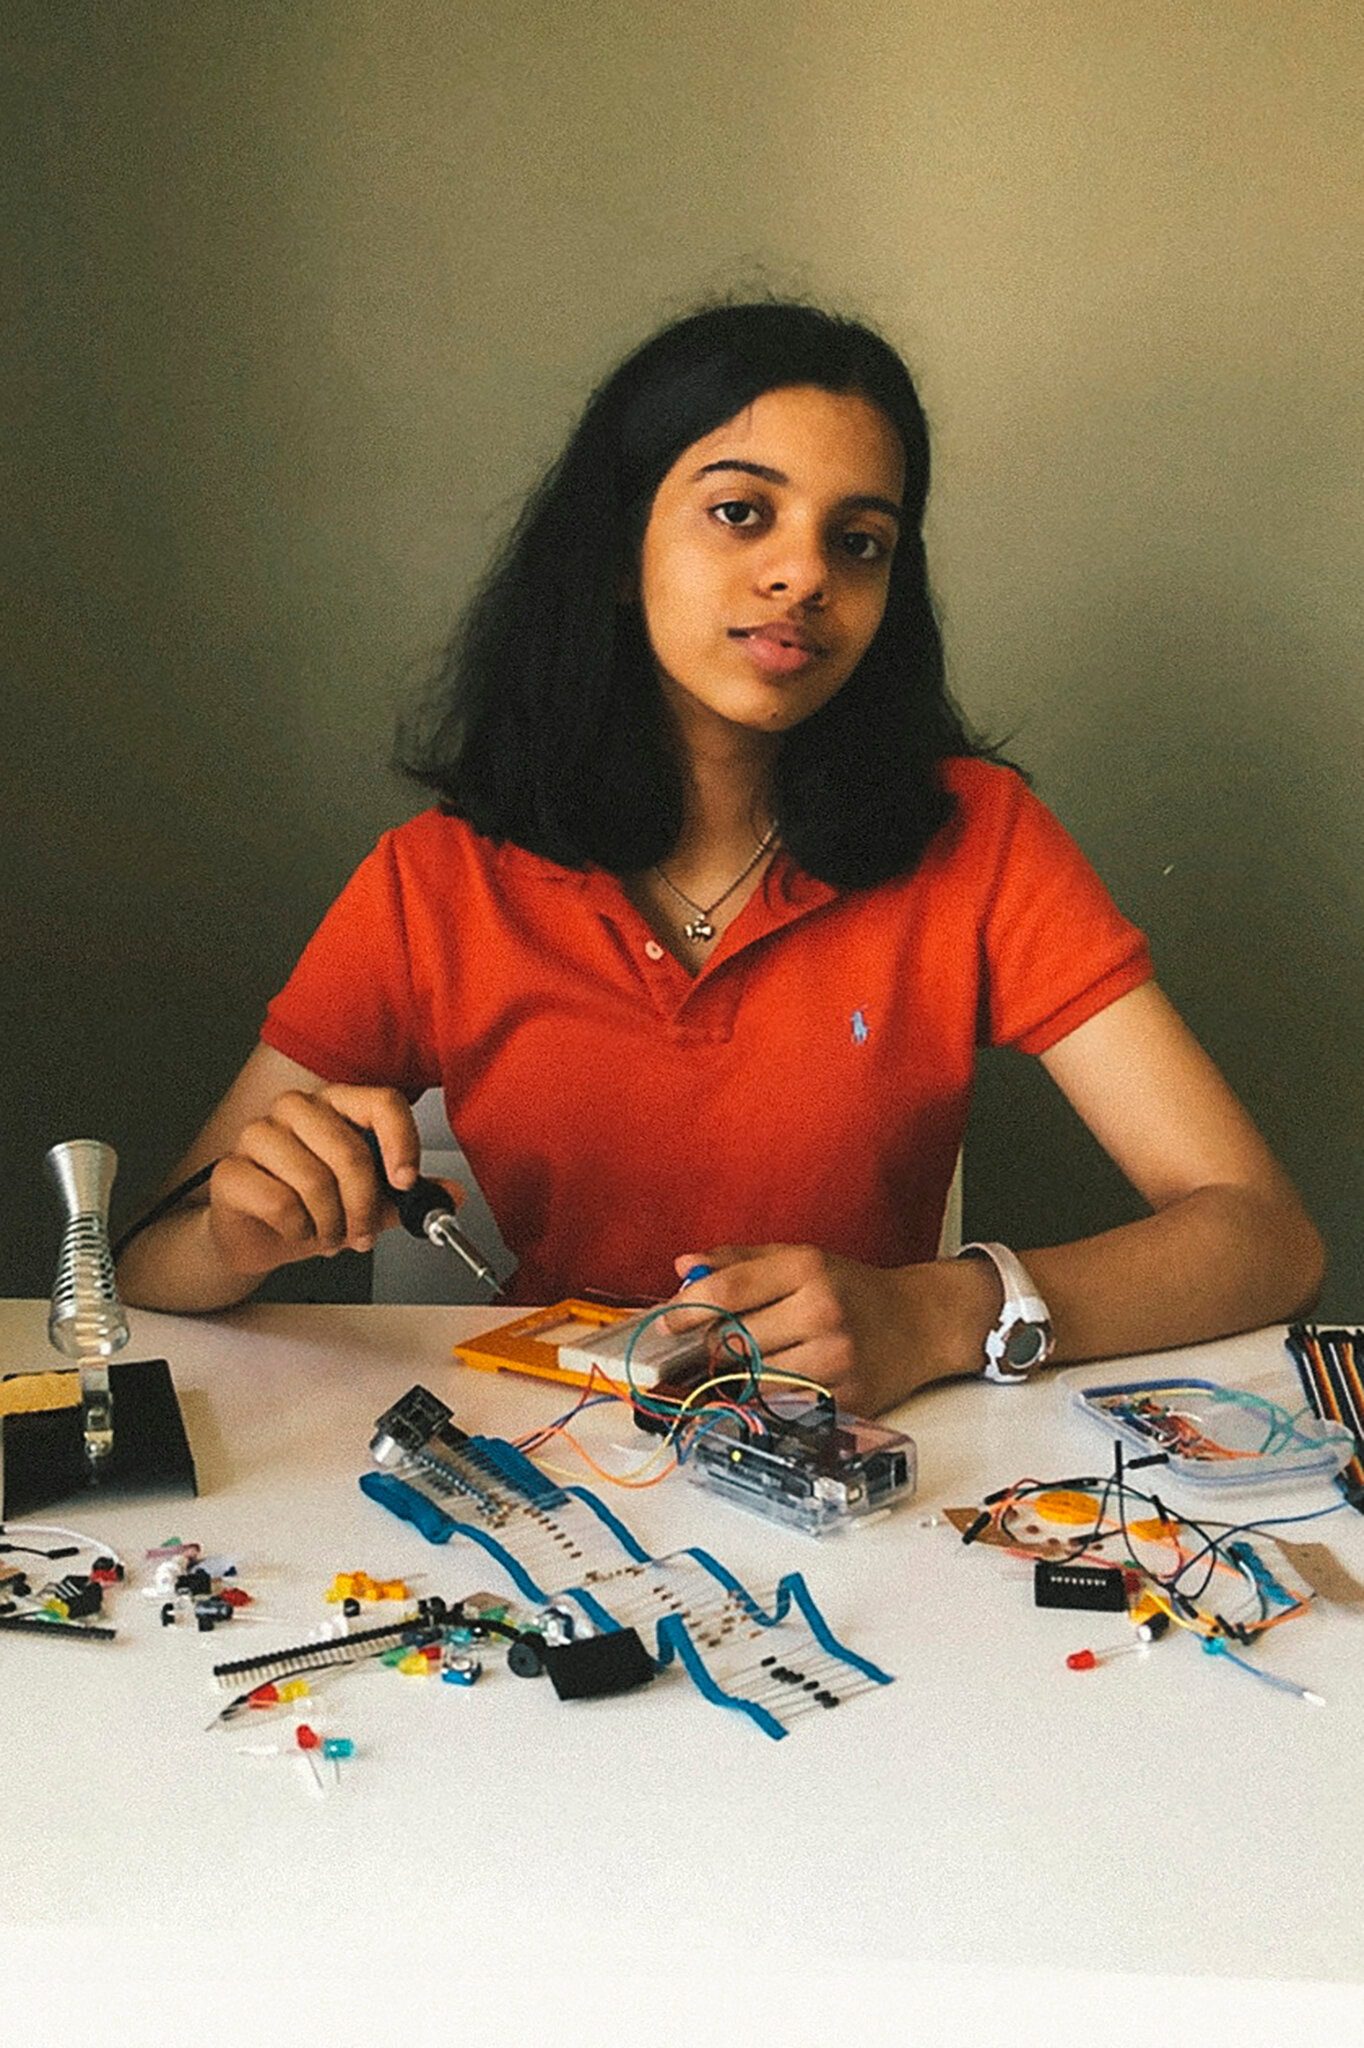 Lernen Sie Neha Shukla kennen, die 16-jährige jugendliche Innovatorin, STEM-Expertin und Empfängerin des Diana Award im Jahr 2021 für ihre Erfindung SixFeetApart.